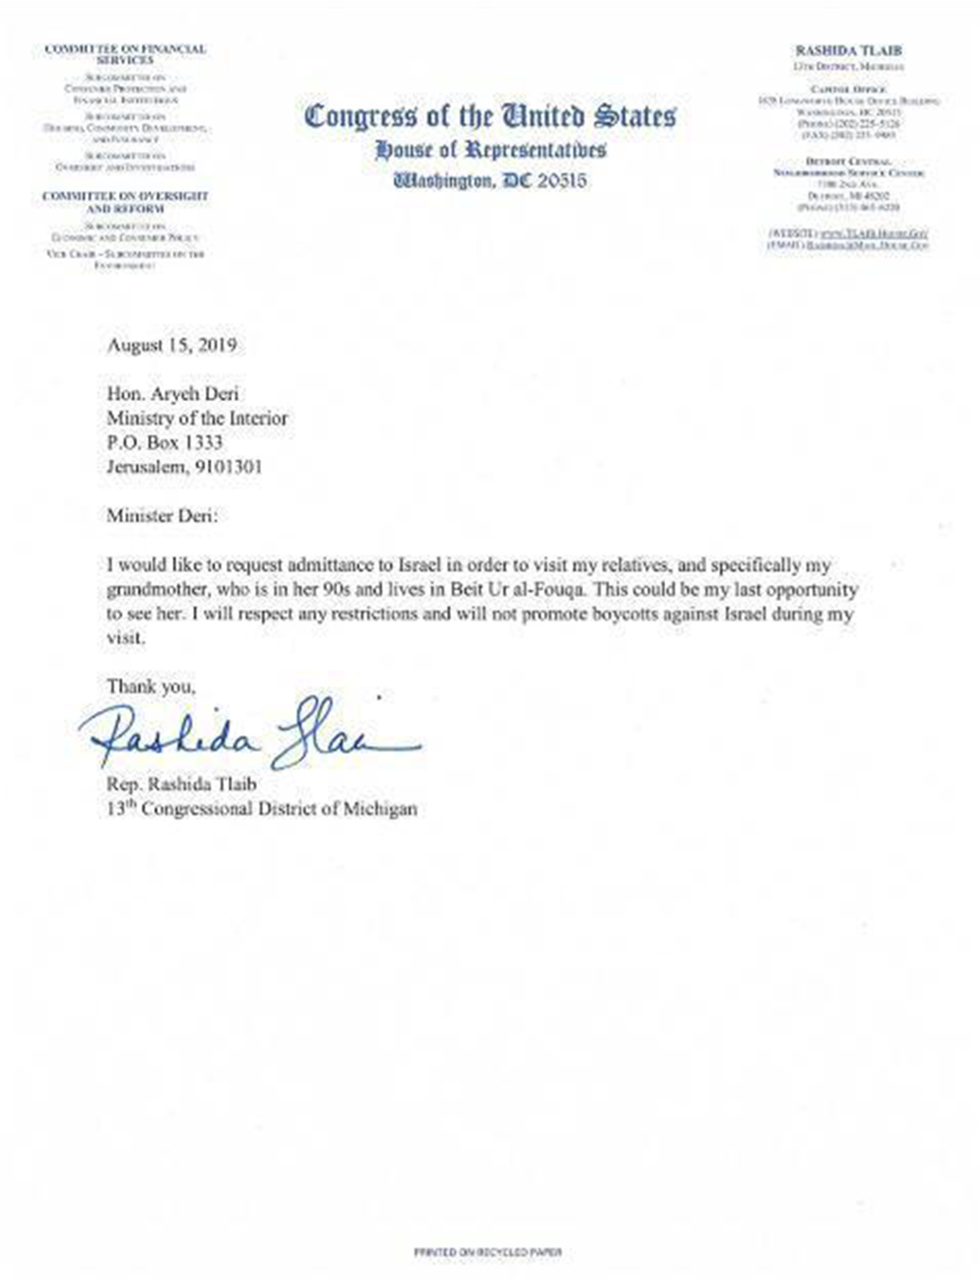 La carta enviada por Rashida Tlaib al Ministro del Interior de Israel